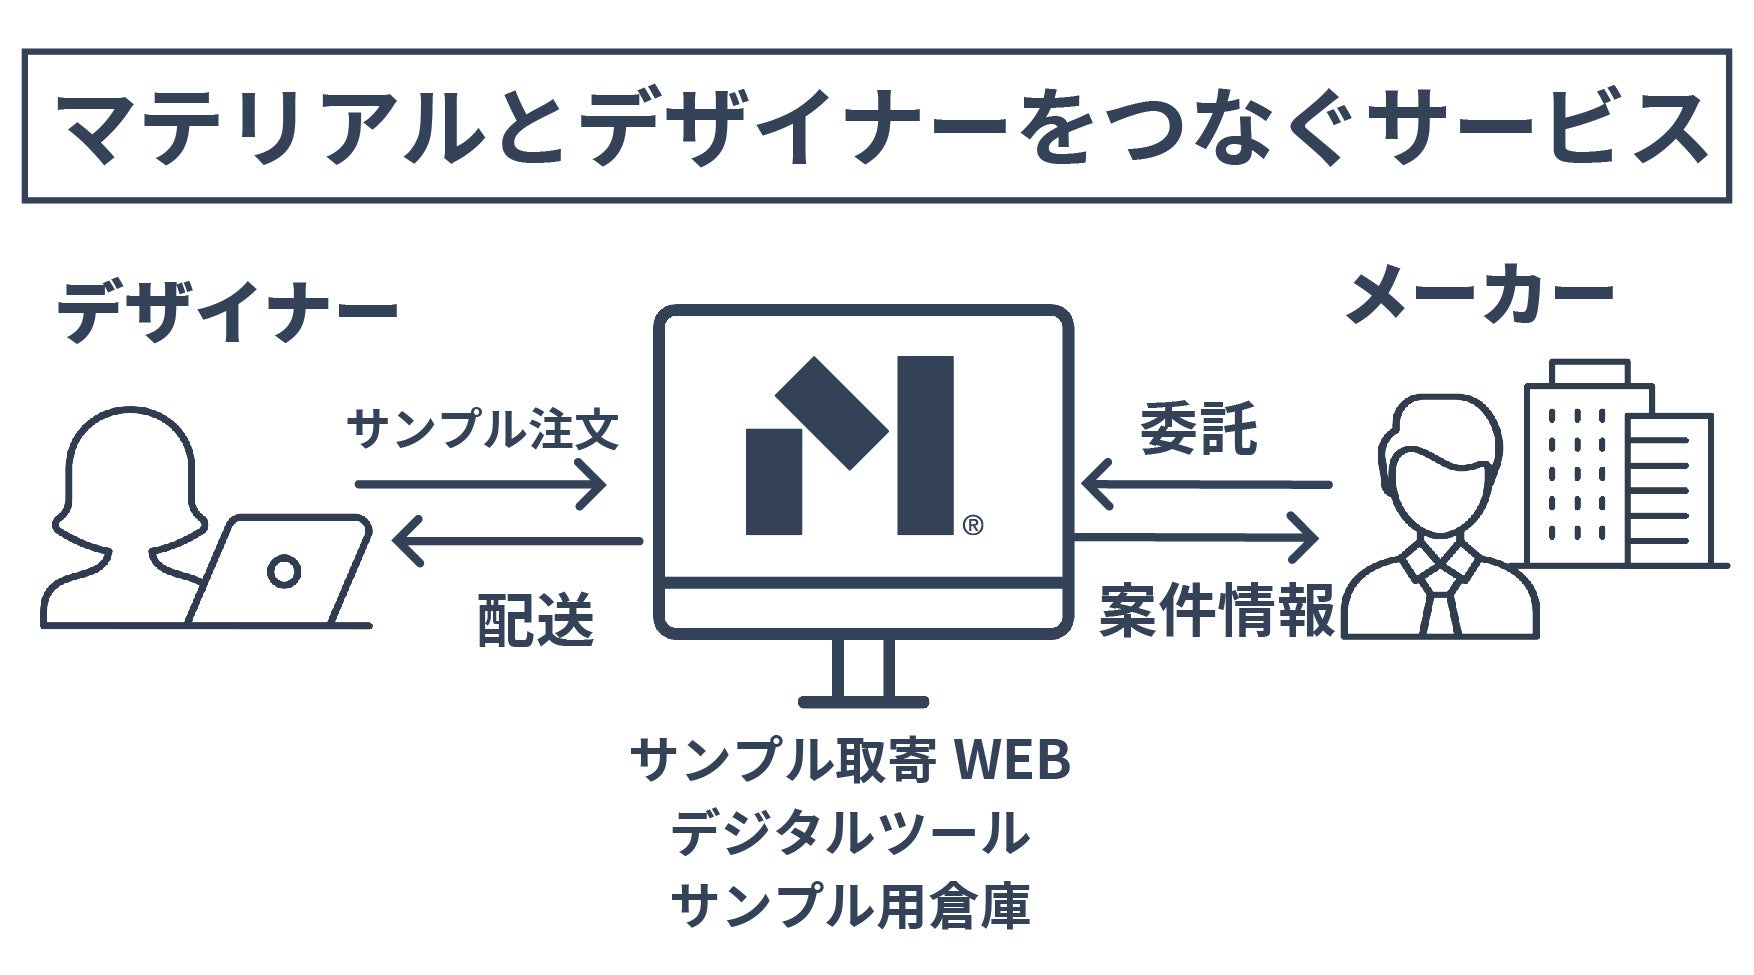 船場、「Material Bank® Japan」の運用実証事業へ参画のサブ画像2